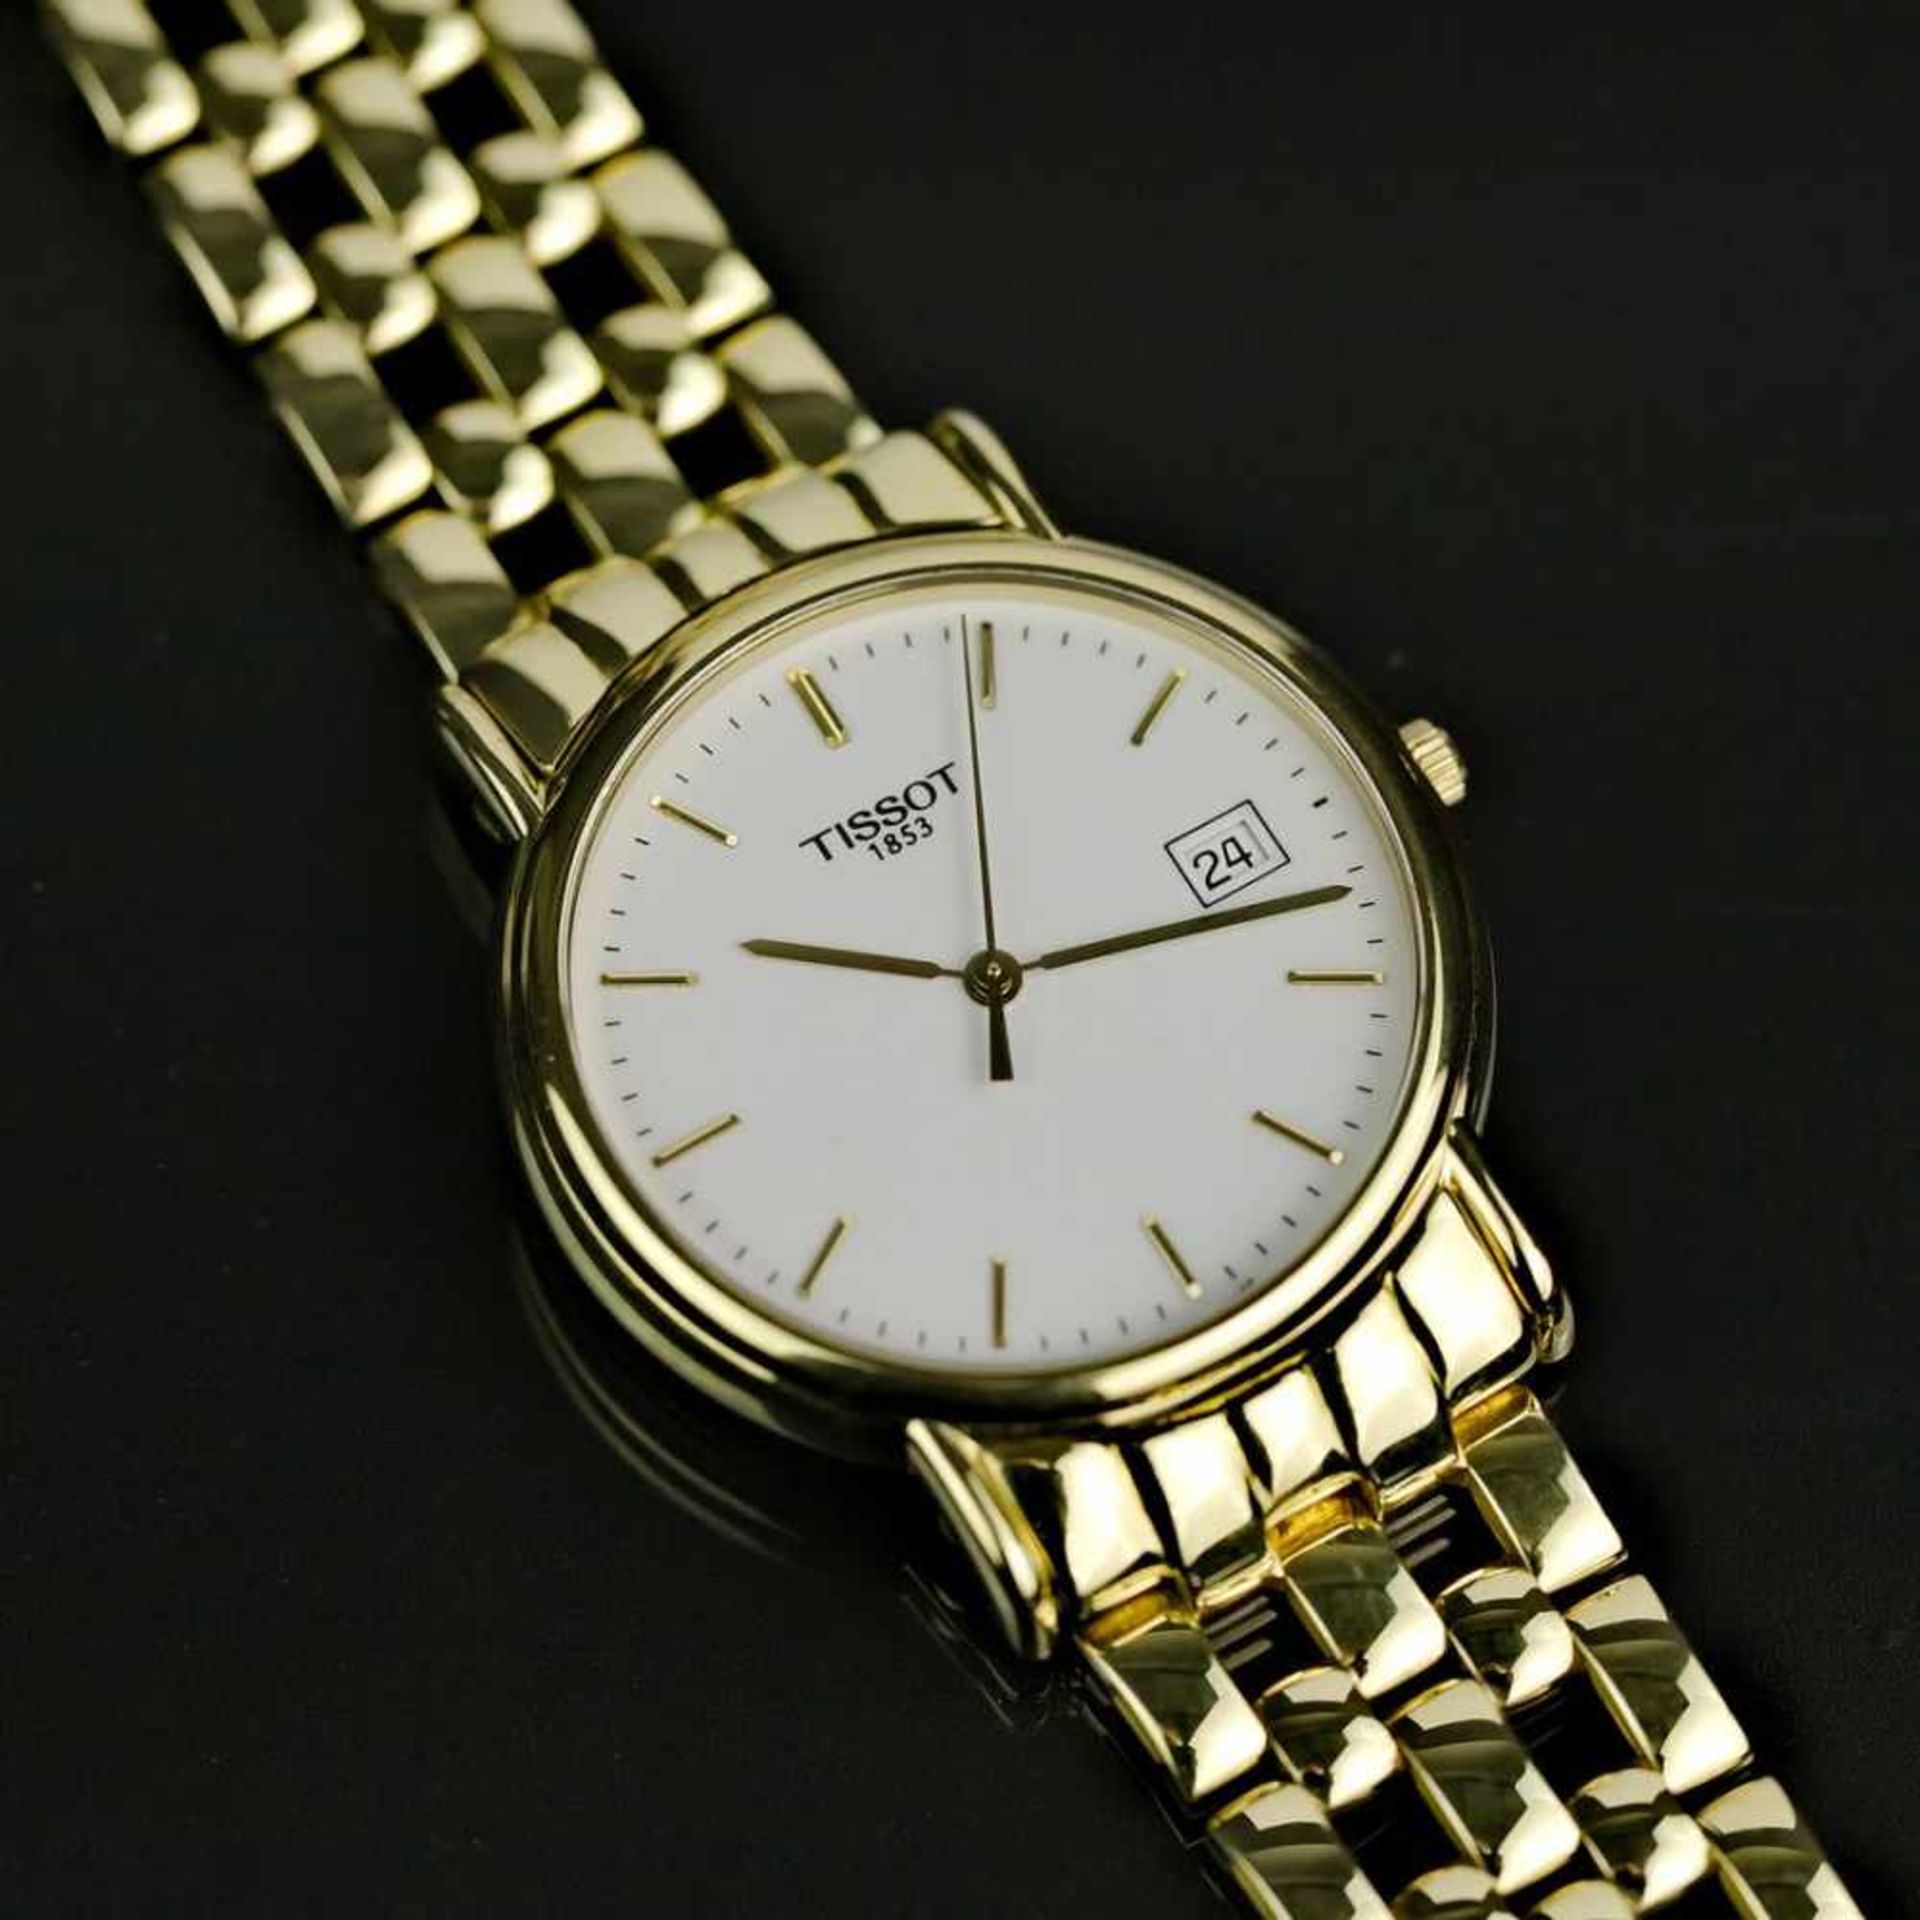 Herrenarmband-Uhr, Tissot / Schweiz, Gelb-Gold 750 / 18 Karat, neuwertig, wohl ungetragen.Punziert